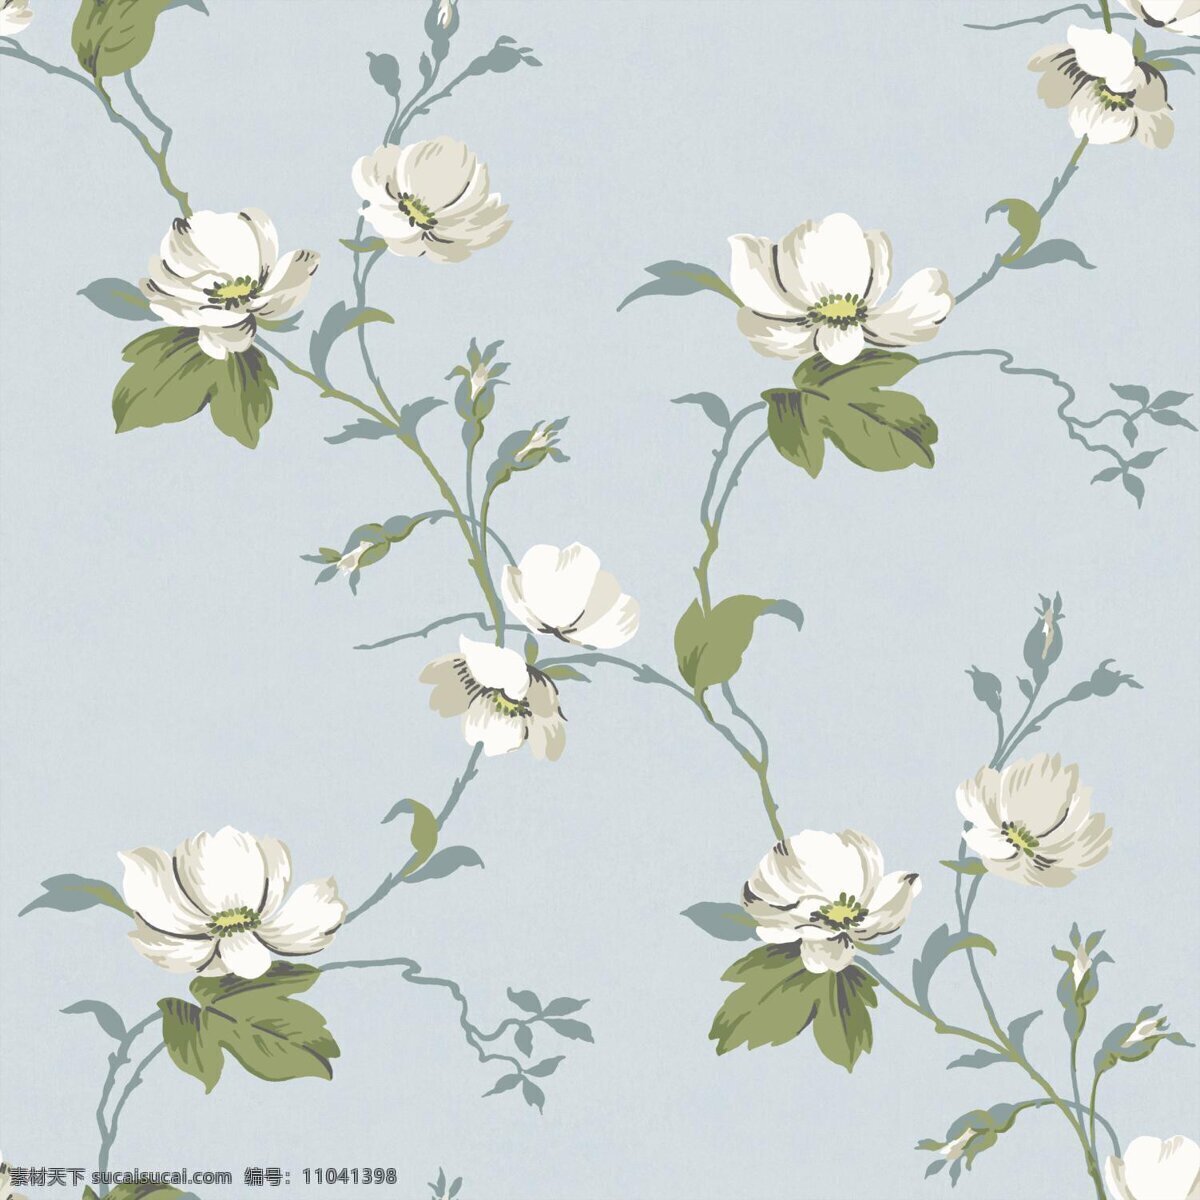 清新 素雅 蓝色 底纹 植物 壁纸 图案 白色花朵 蓝色底纹 绿色树叶 清新风格 植物壁纸